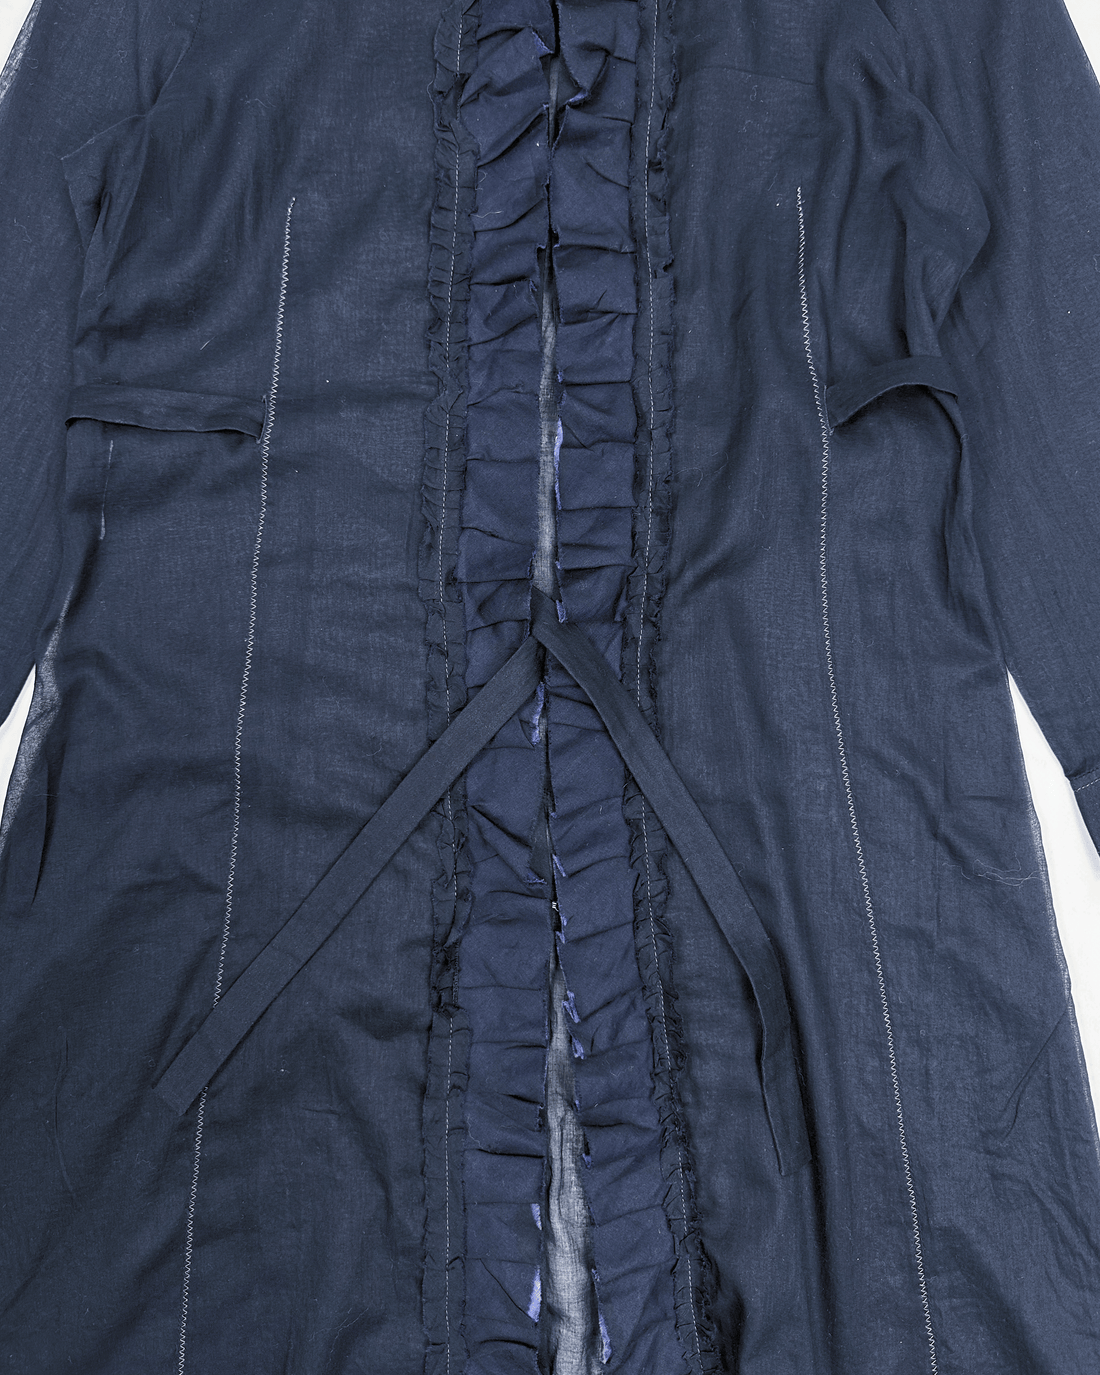 Miu Miu Black Translucid Long Shirt 2000's